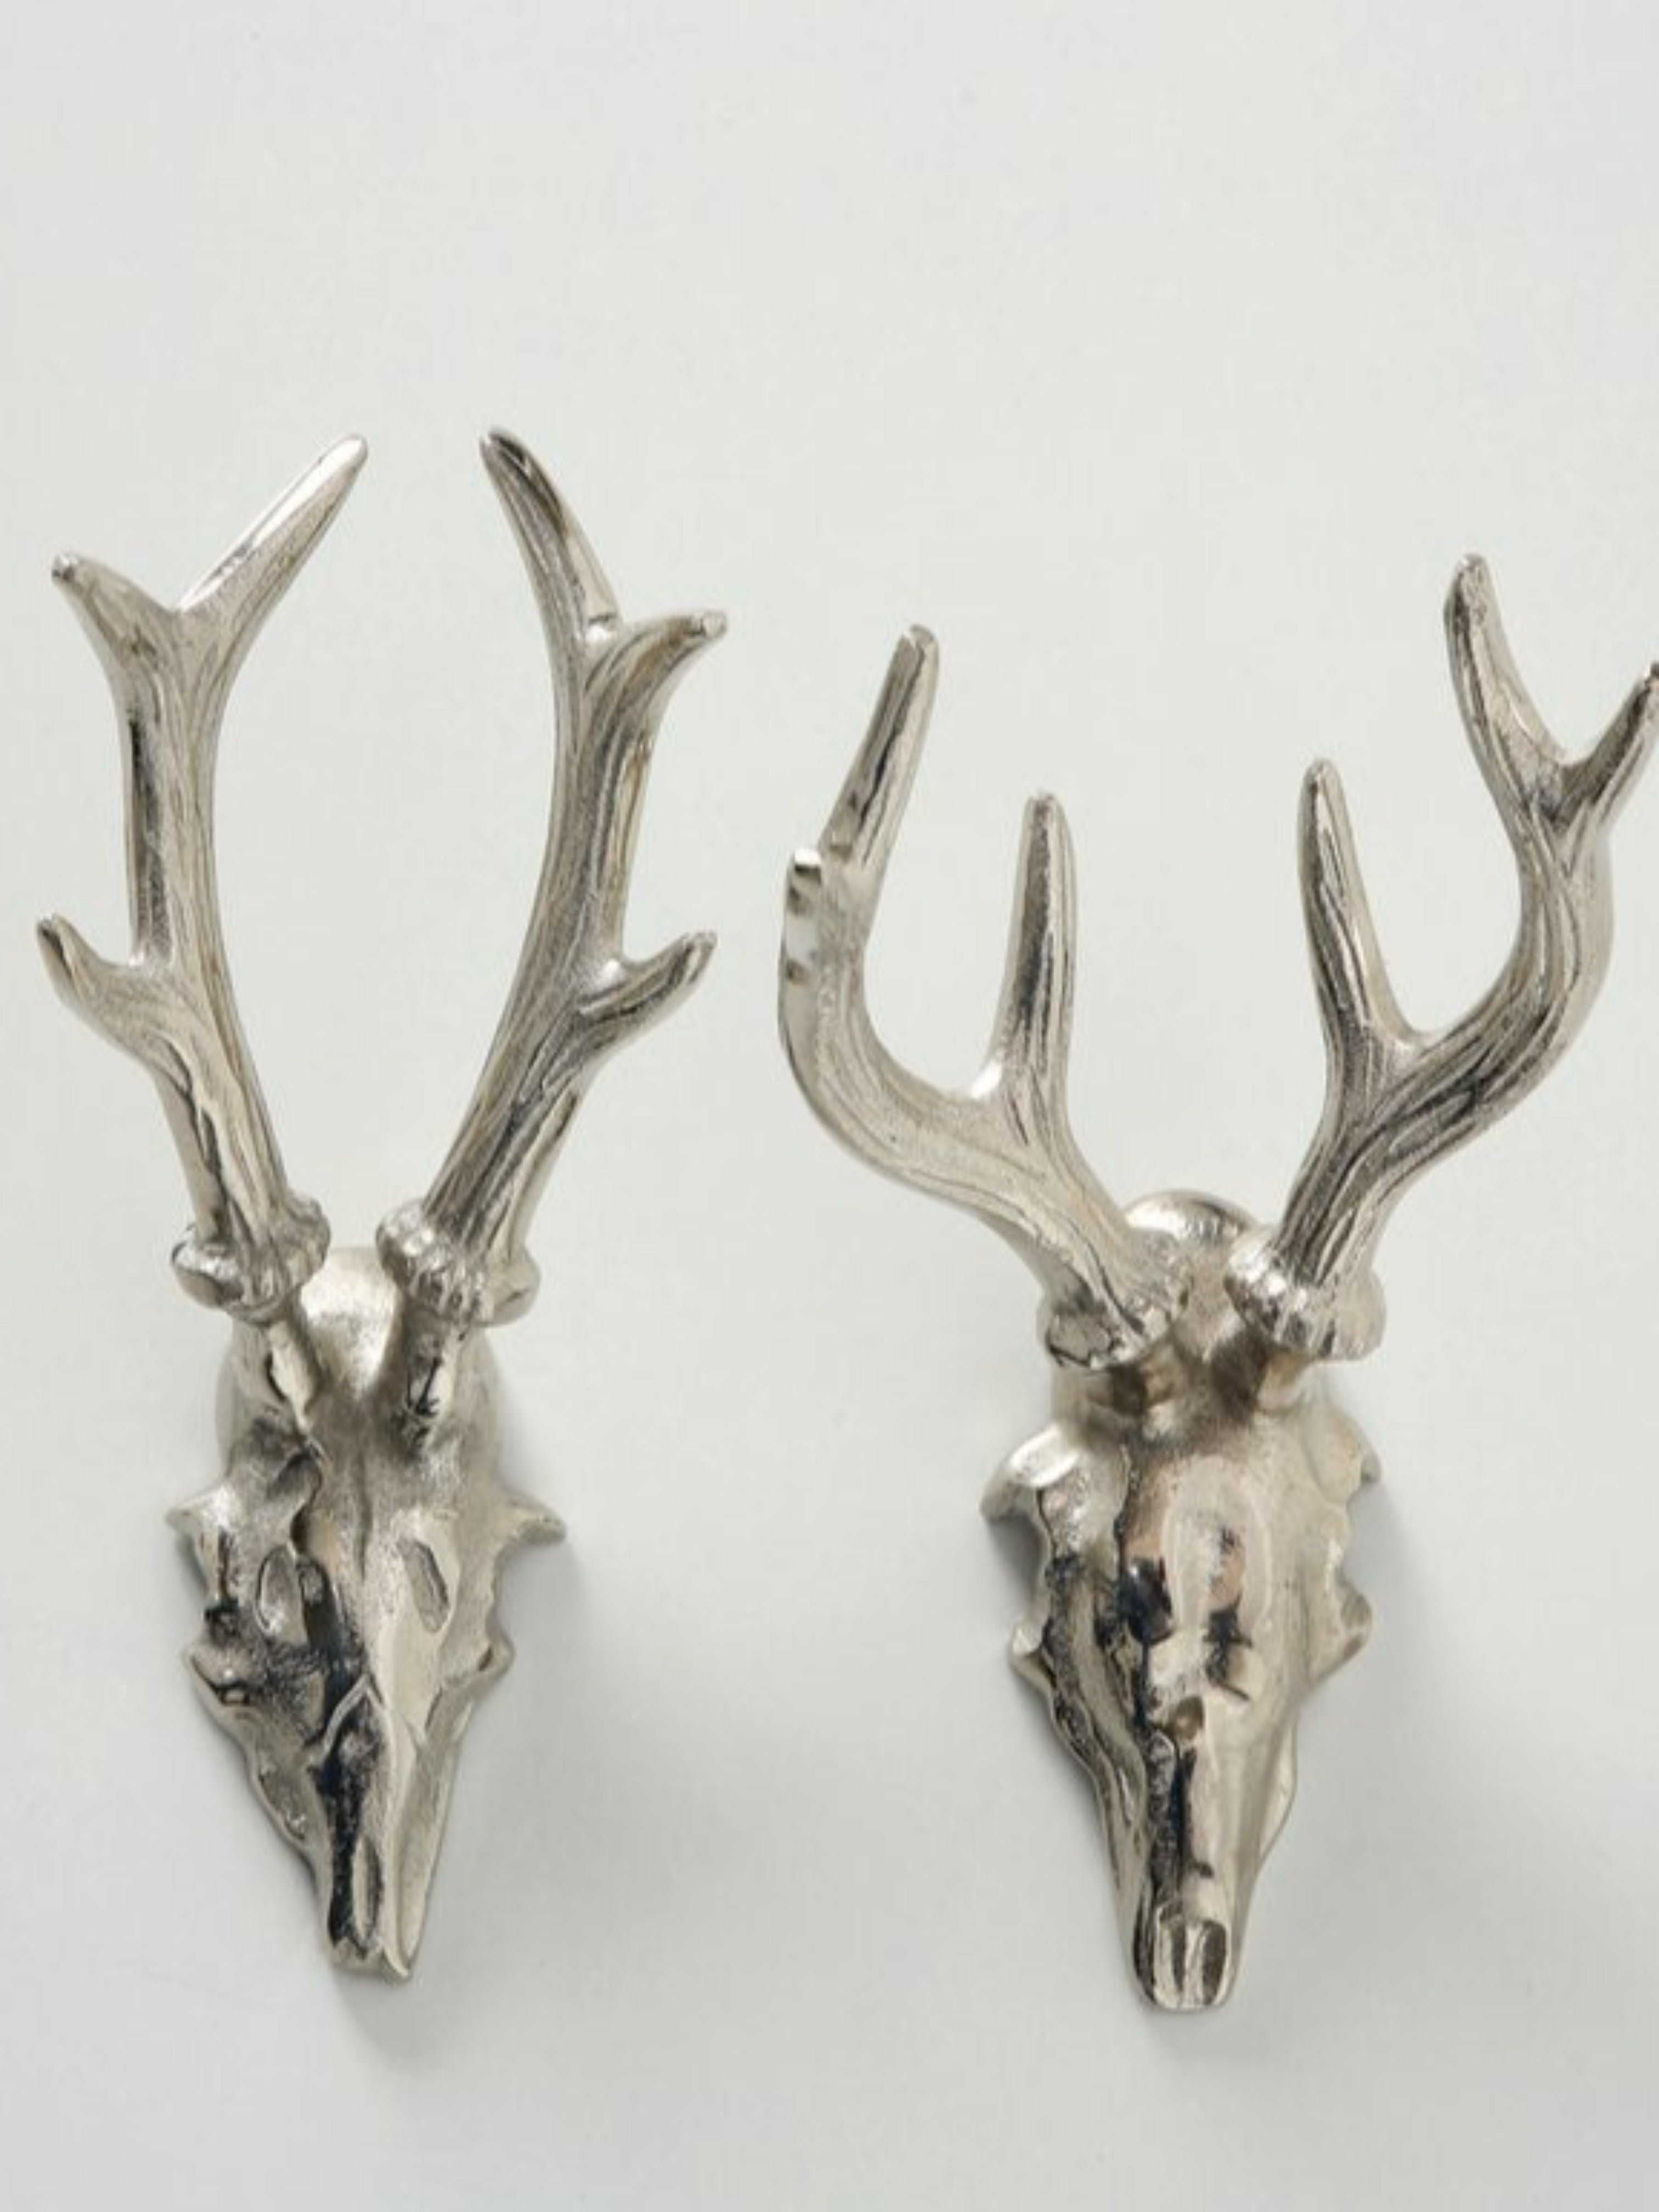 Deer Skull Wall Ornament